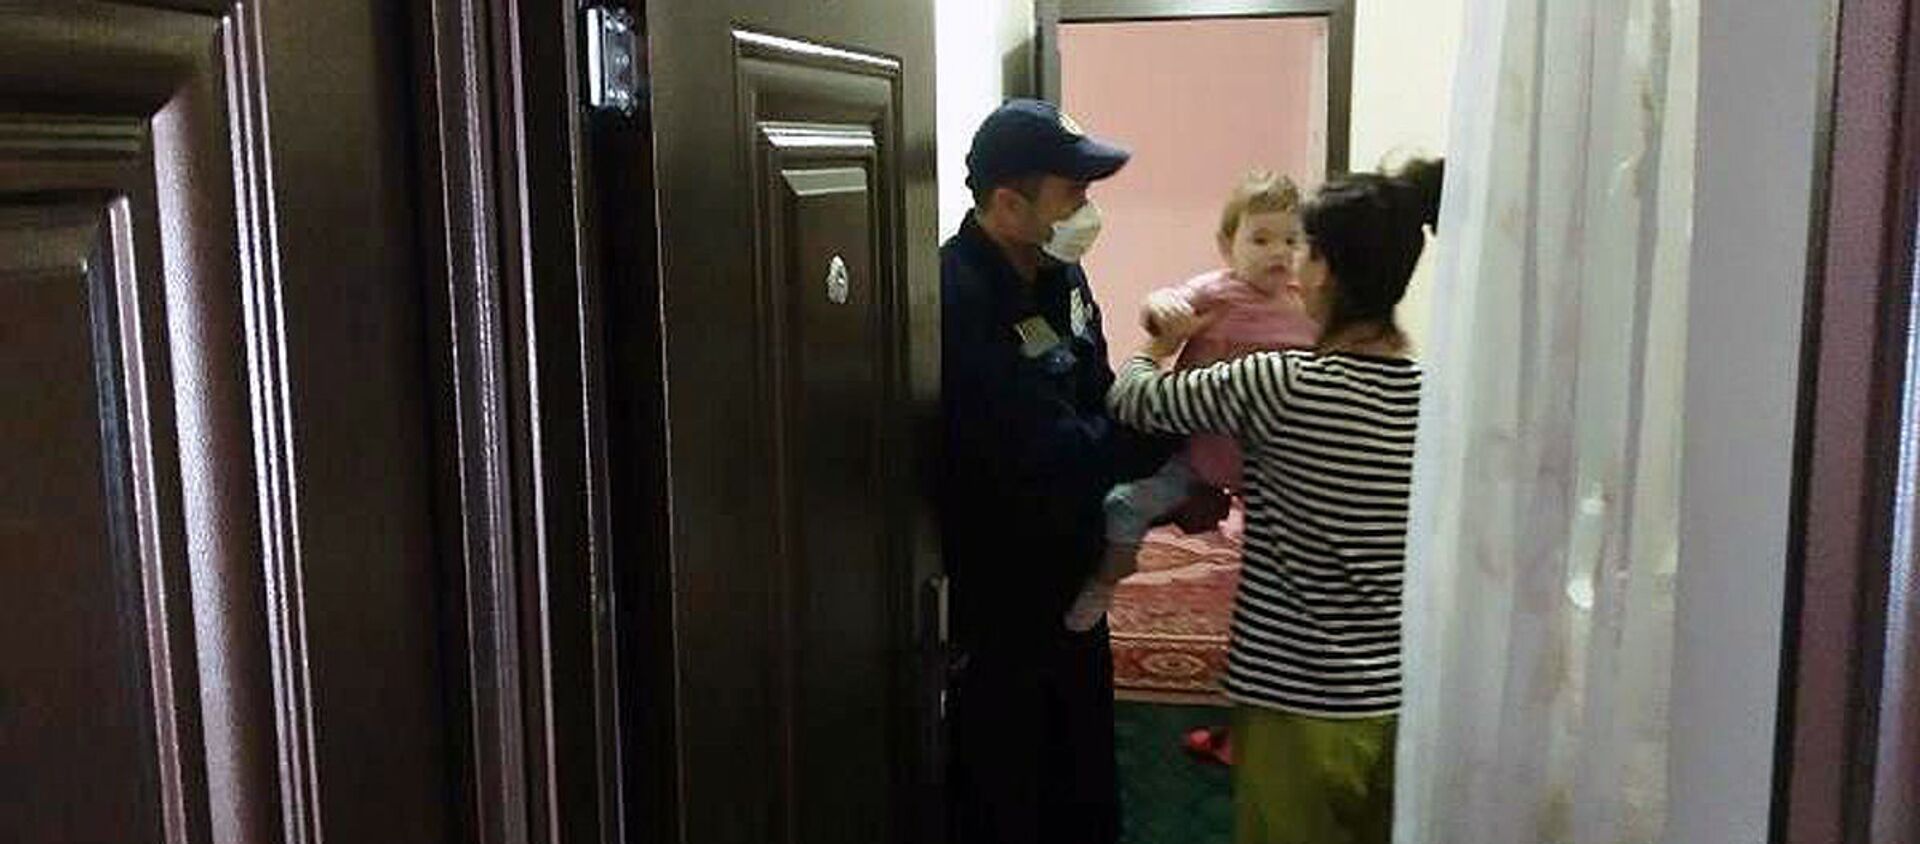 В Самарканде спасли трехлетнюю девочку, оставленную одну в квартире - Sputnik Узбекистан, 1920, 19.10.2020